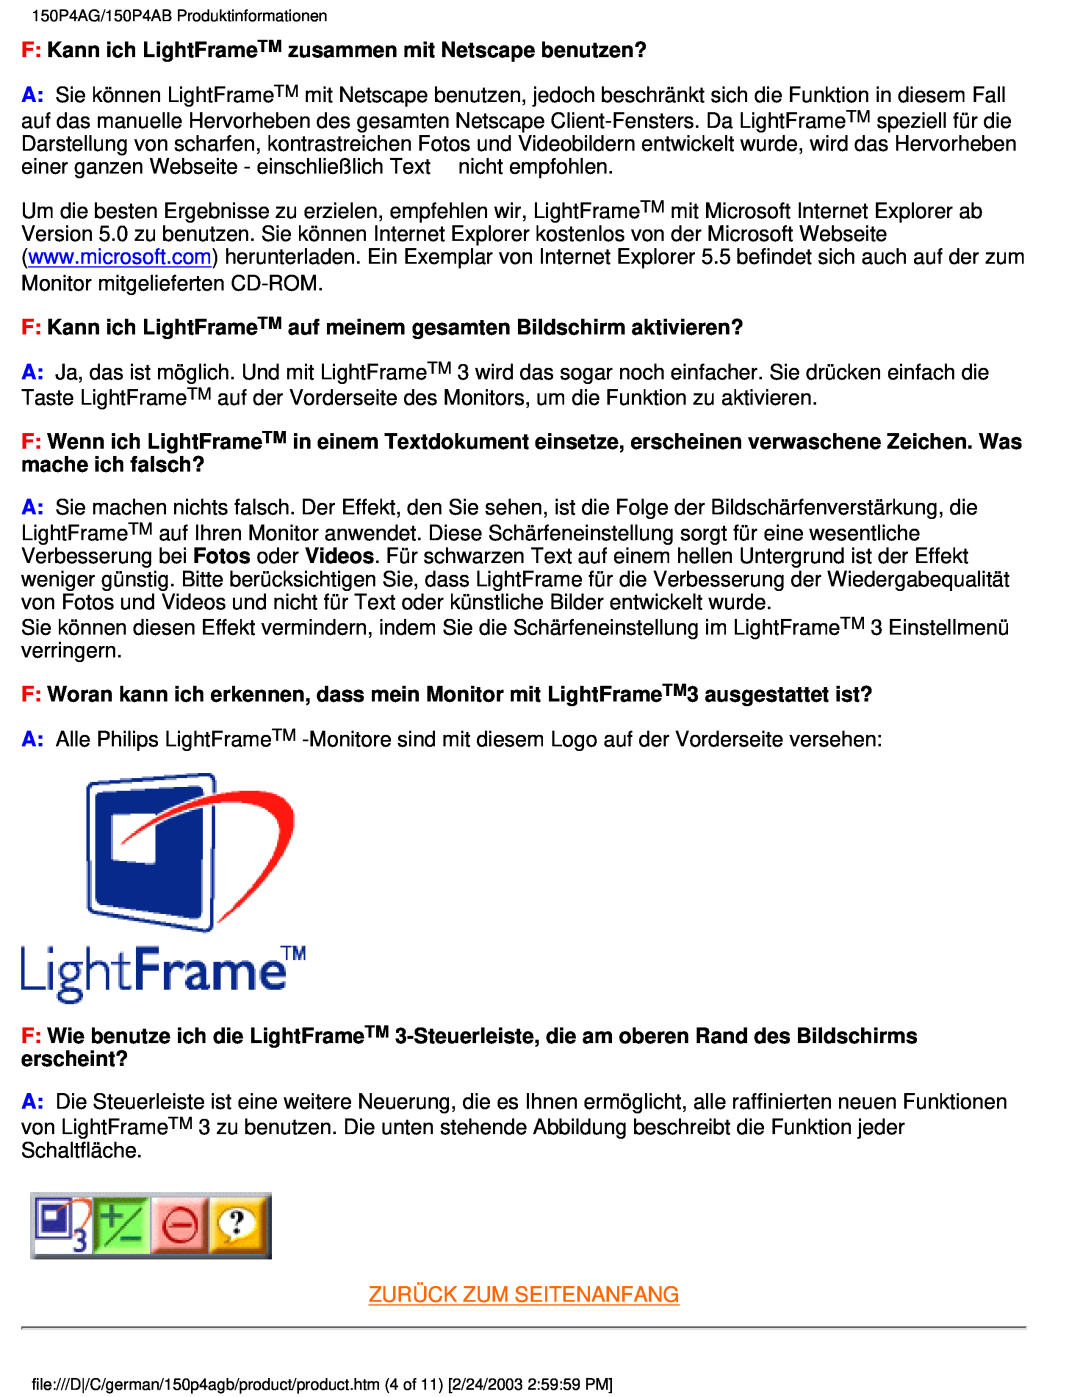 Philips 150P4AG, 150P4AB user manual F Kann ich LightFrameTM zusammen mit Netscape benutzen?, Zurück Zum Seitenanfang 